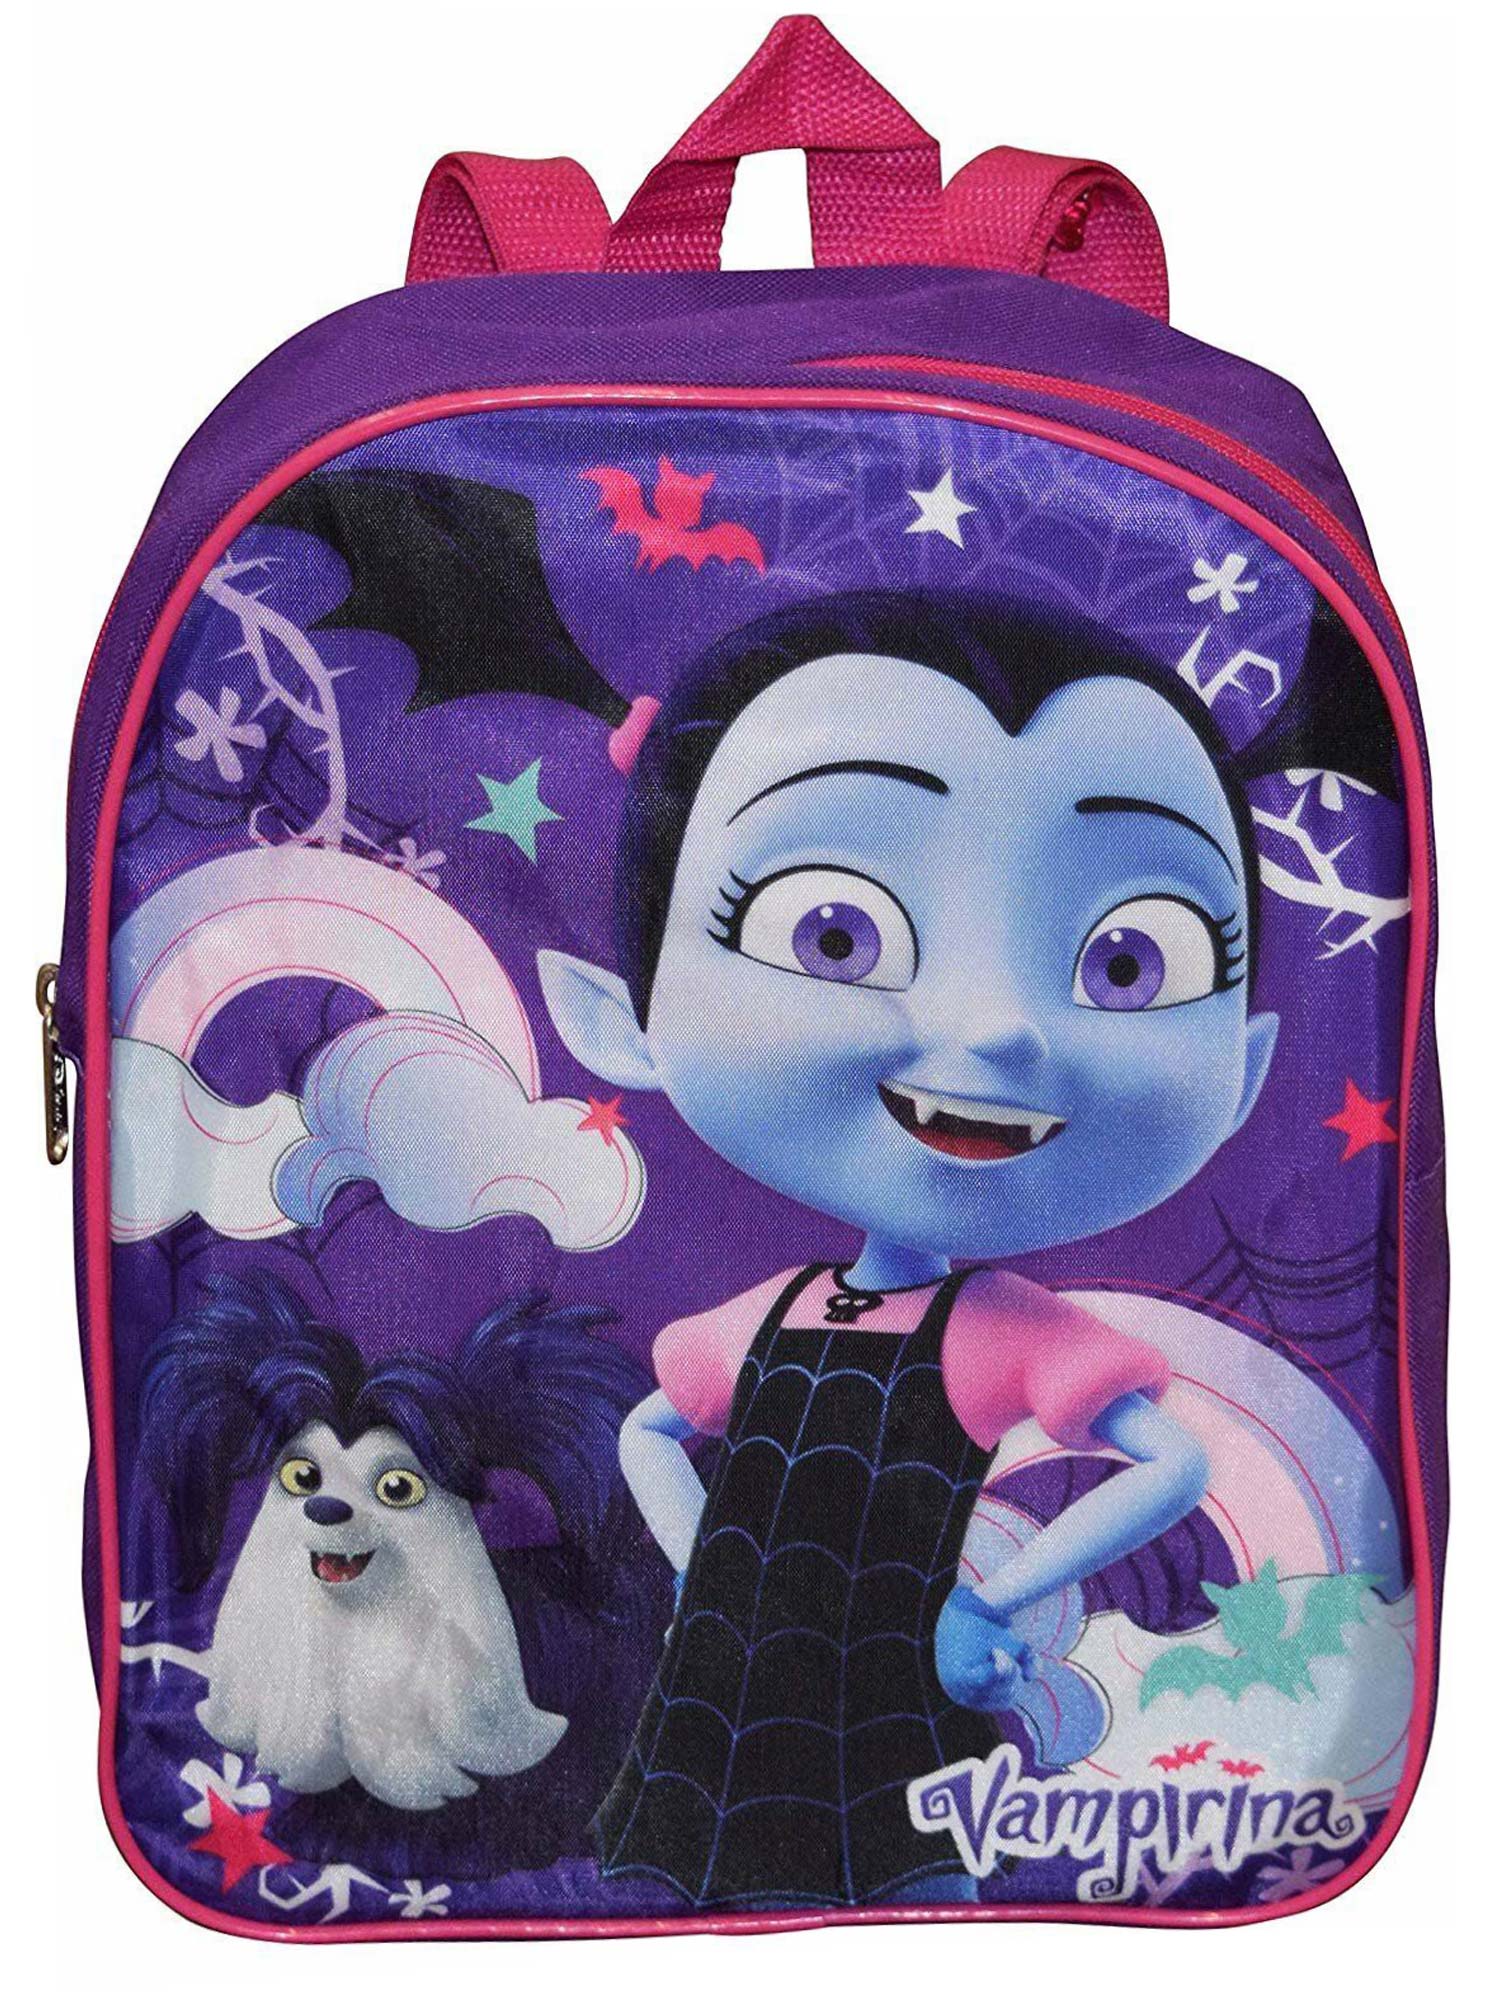 Girls Vampirina Mini Backpack 12" Purple Wolfie - image 1 of 3